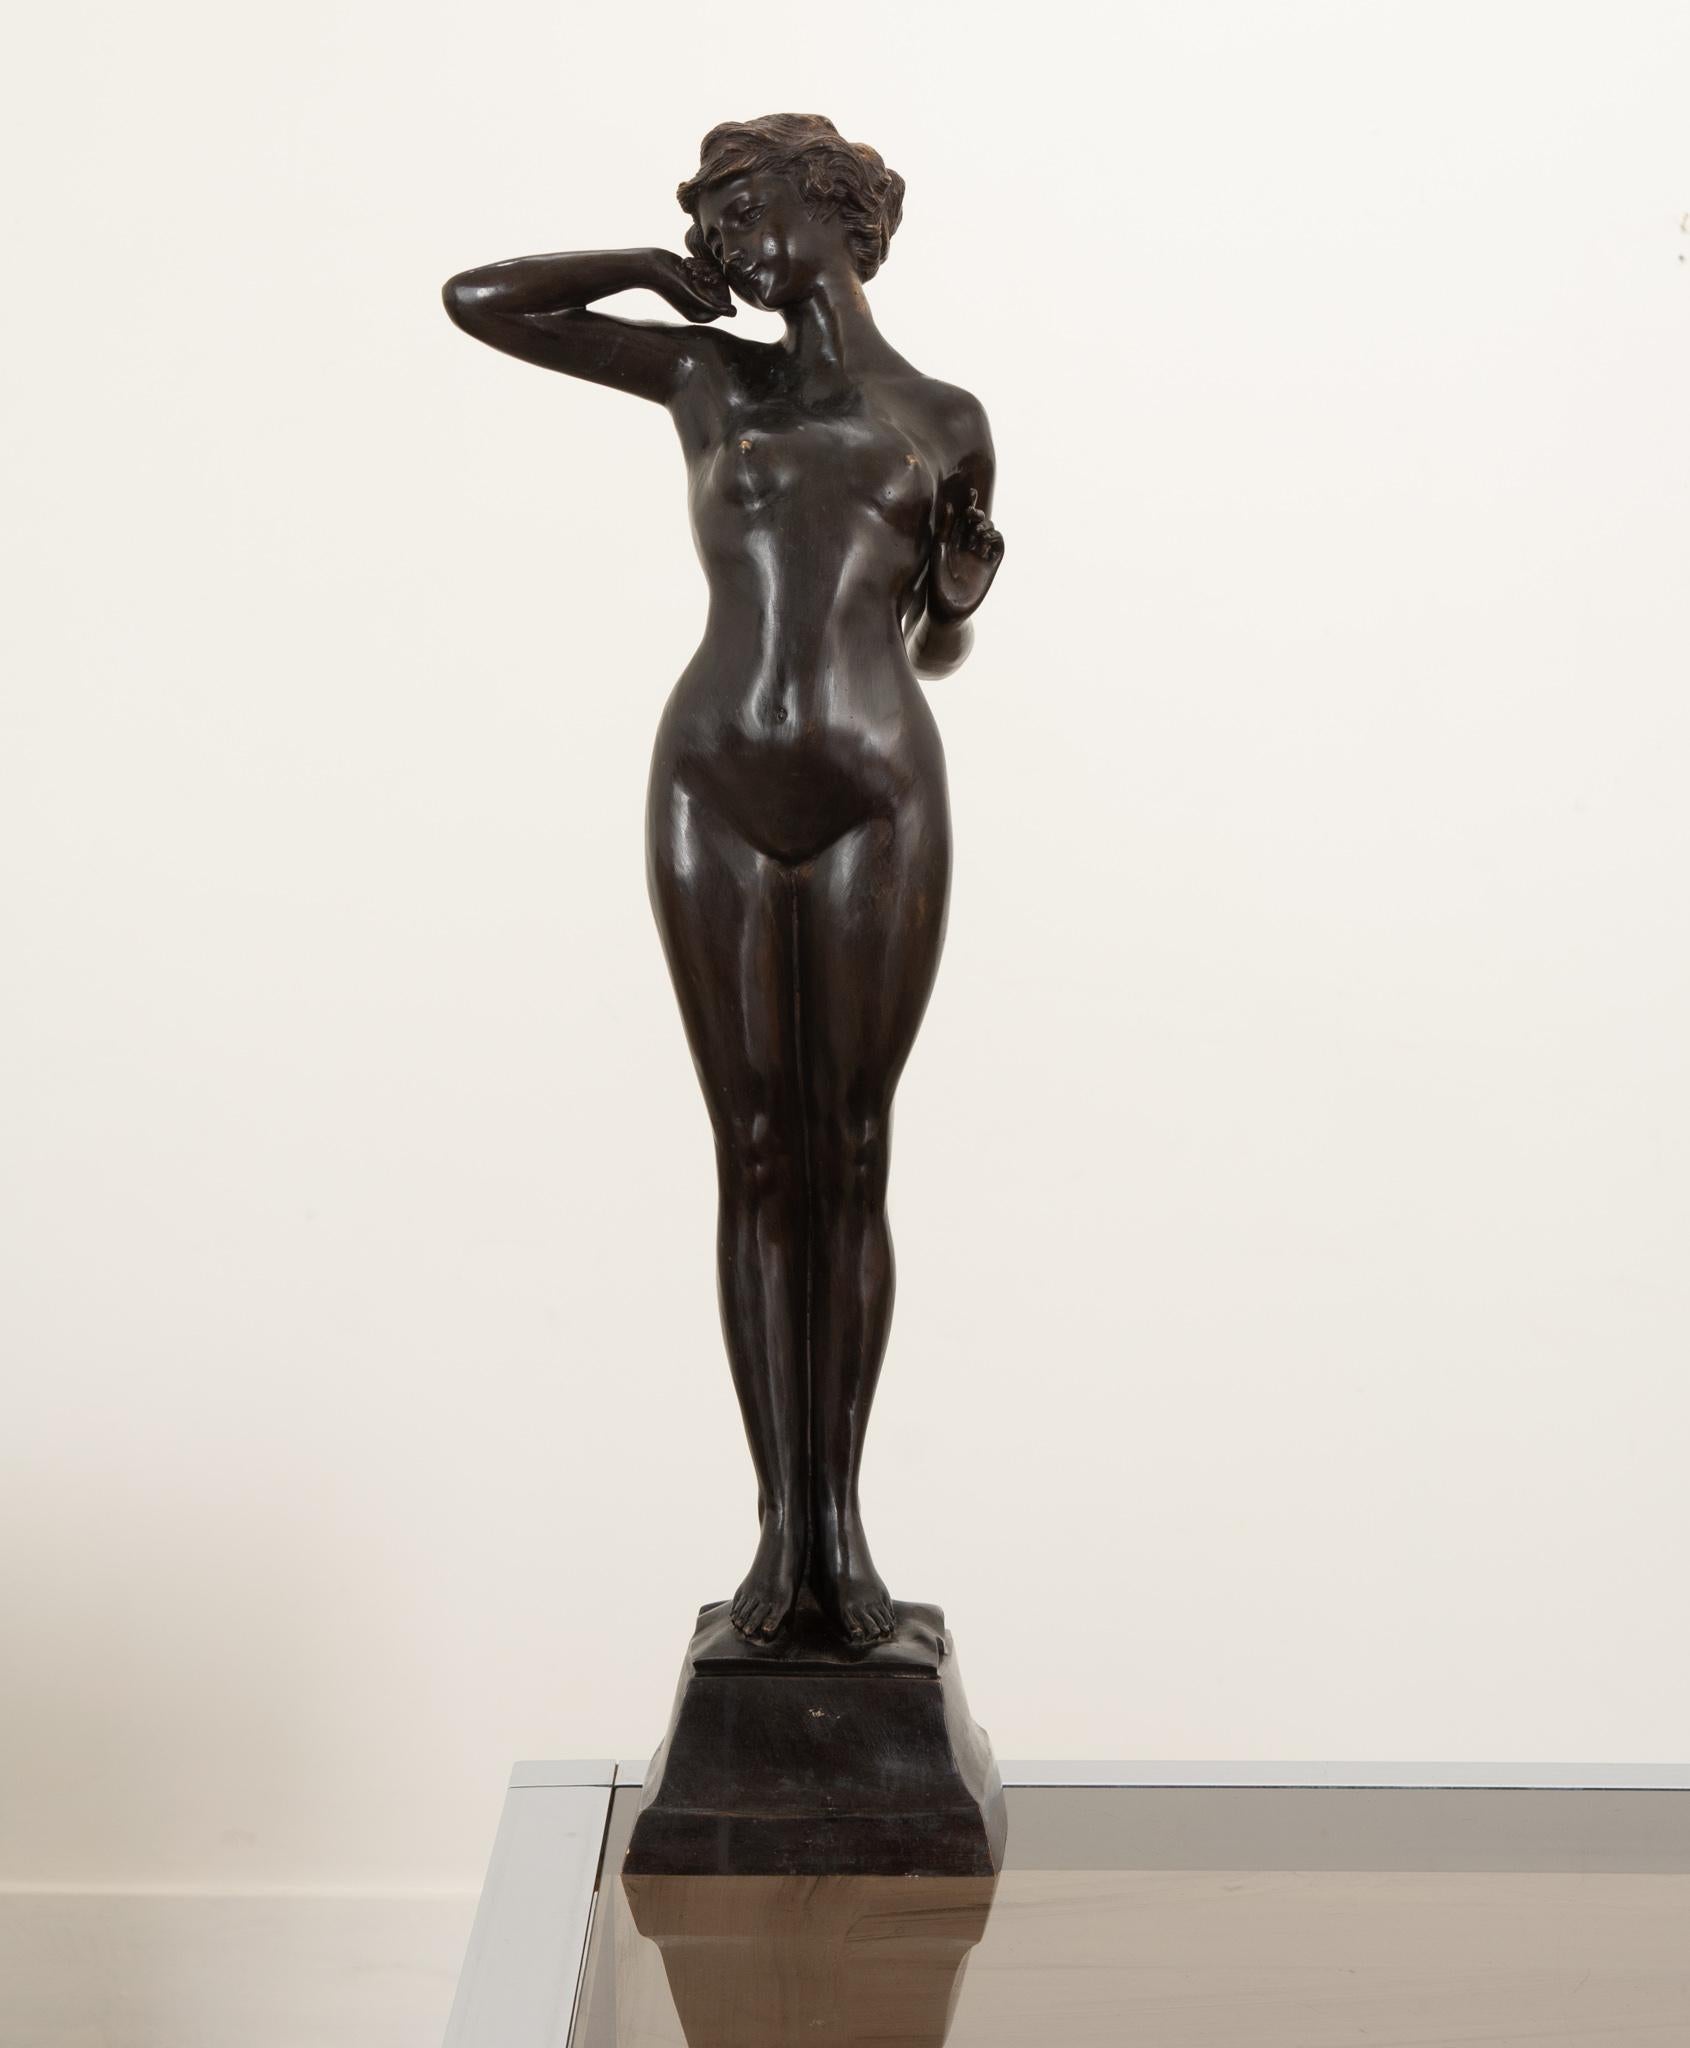 Un magnifique nu féminin en bronze réalisé en France au cours du 19e siècle. La composition est bien équilibrée, la figure dans une posture classique pour montrer la capacité de l'artiste à recréer son anatomie. Merveilleusement patiné. Assurez-vous